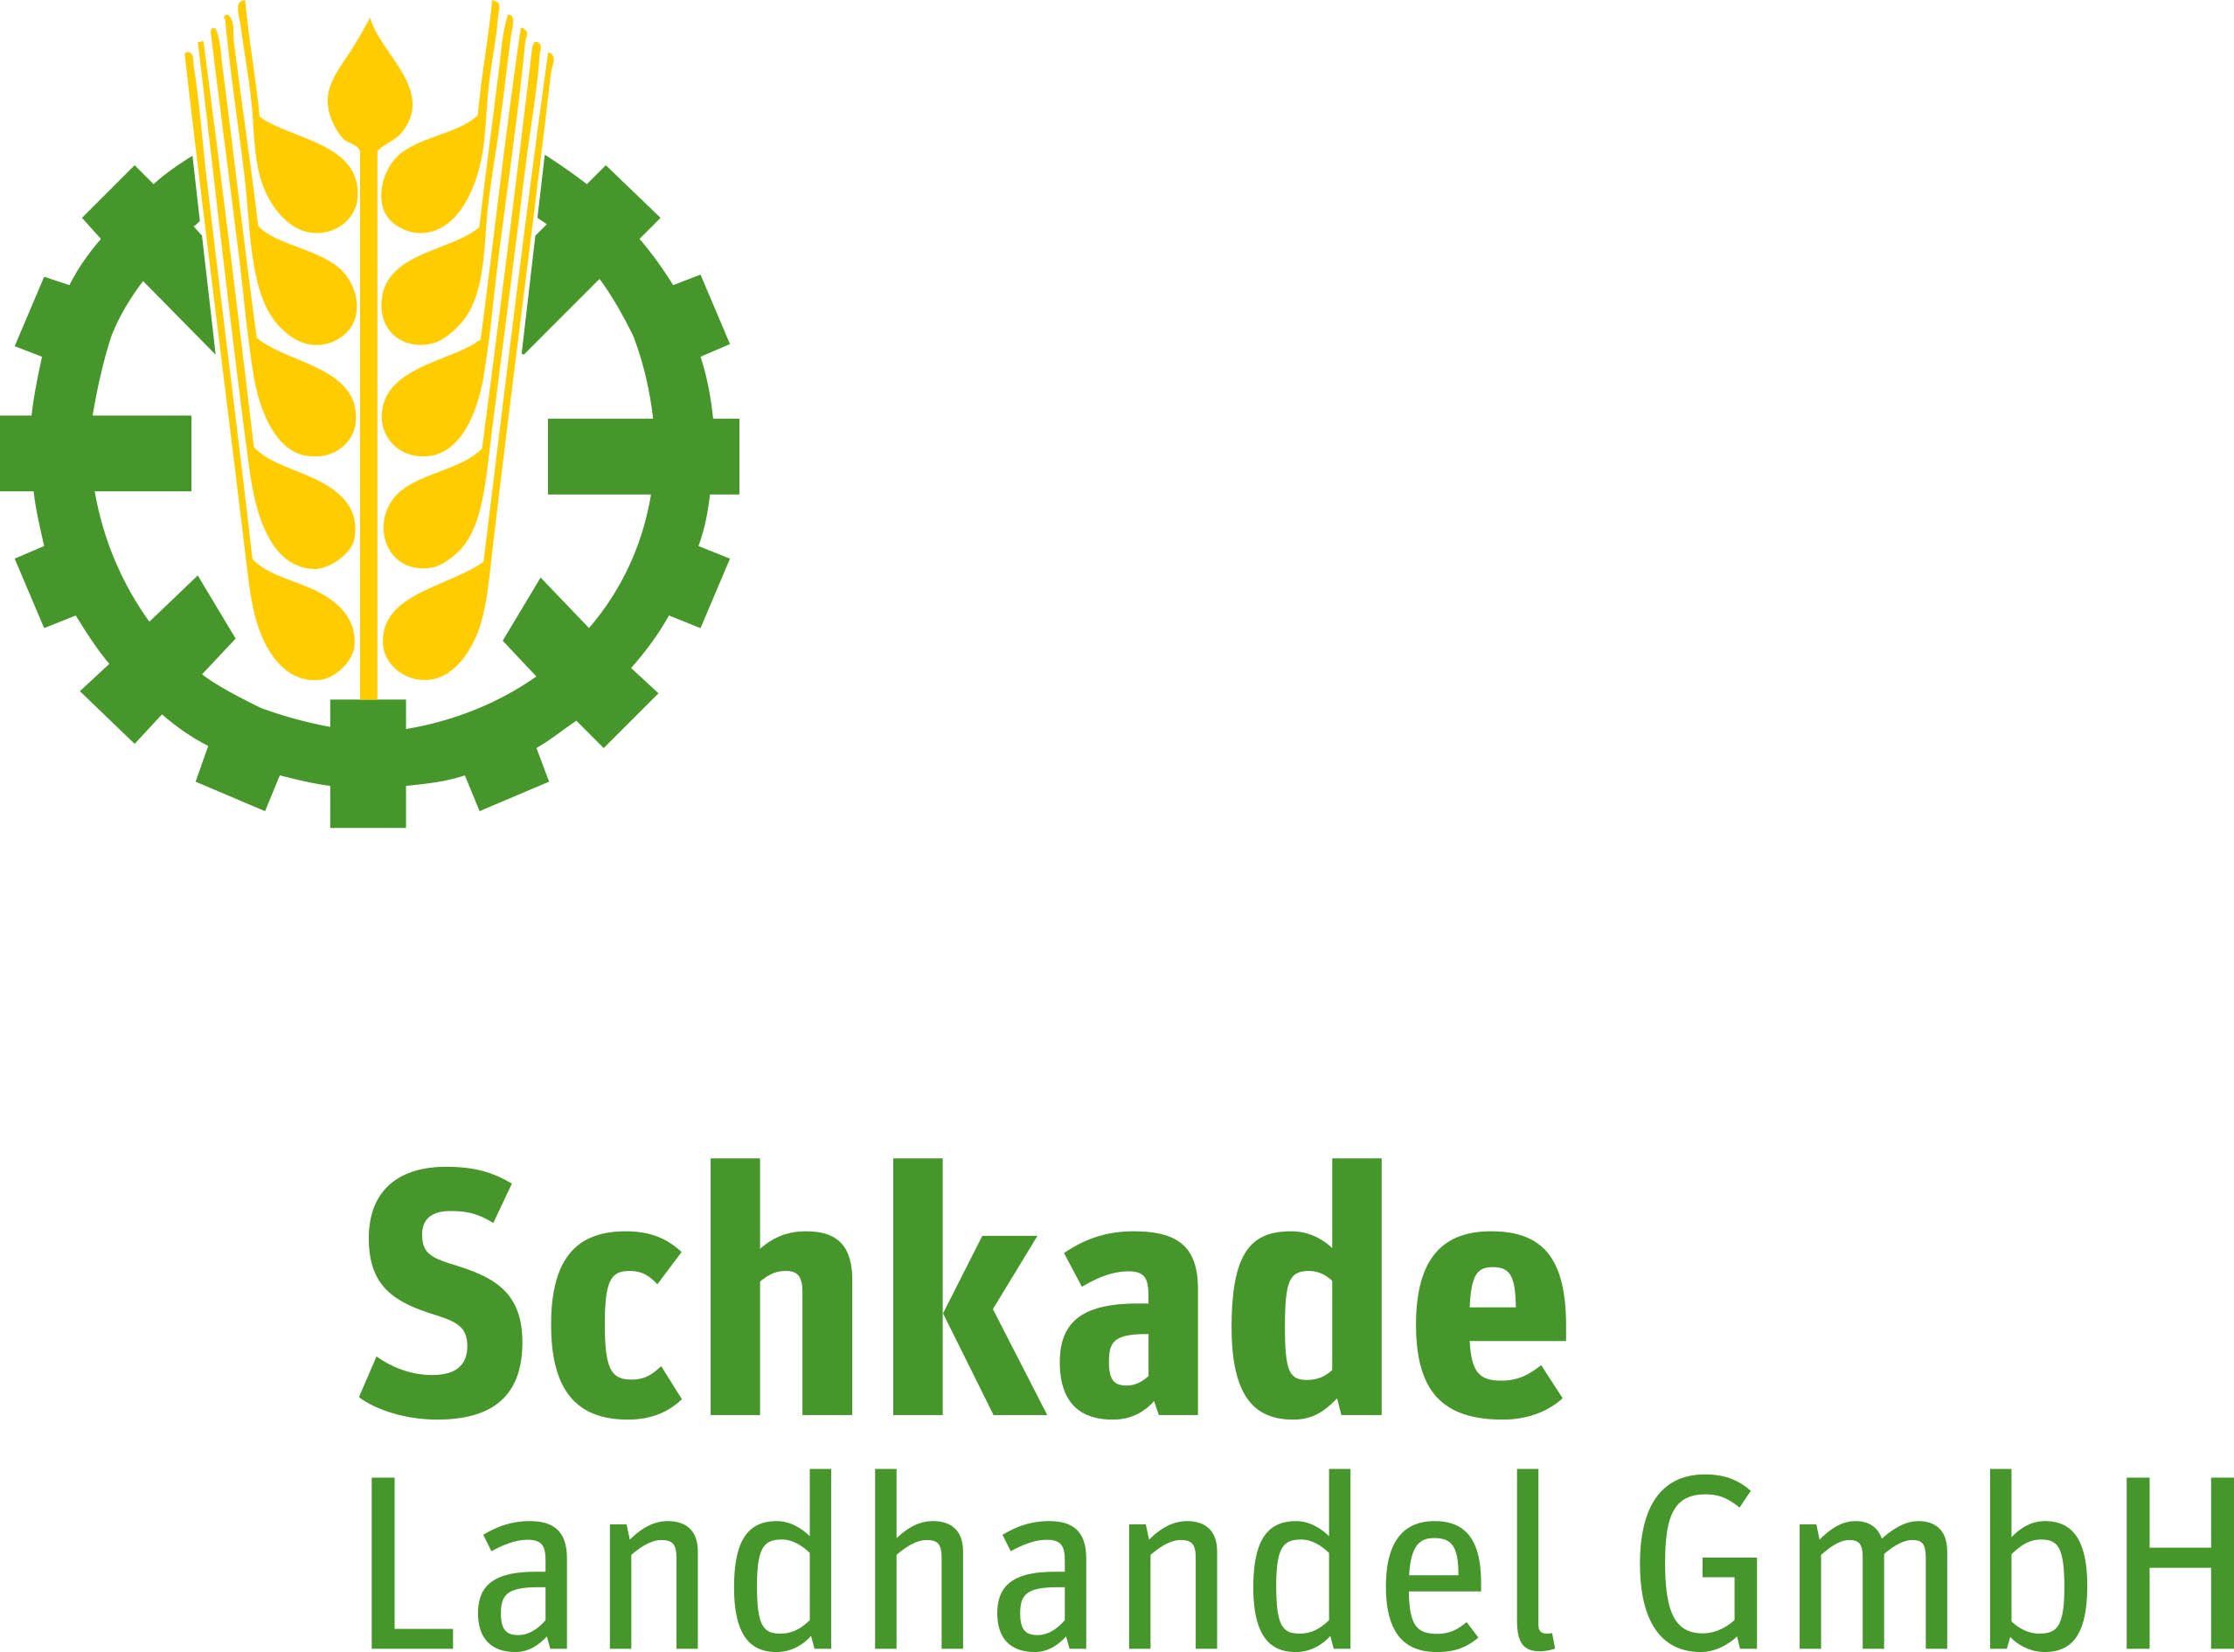 Schkade Landhandel GmbH